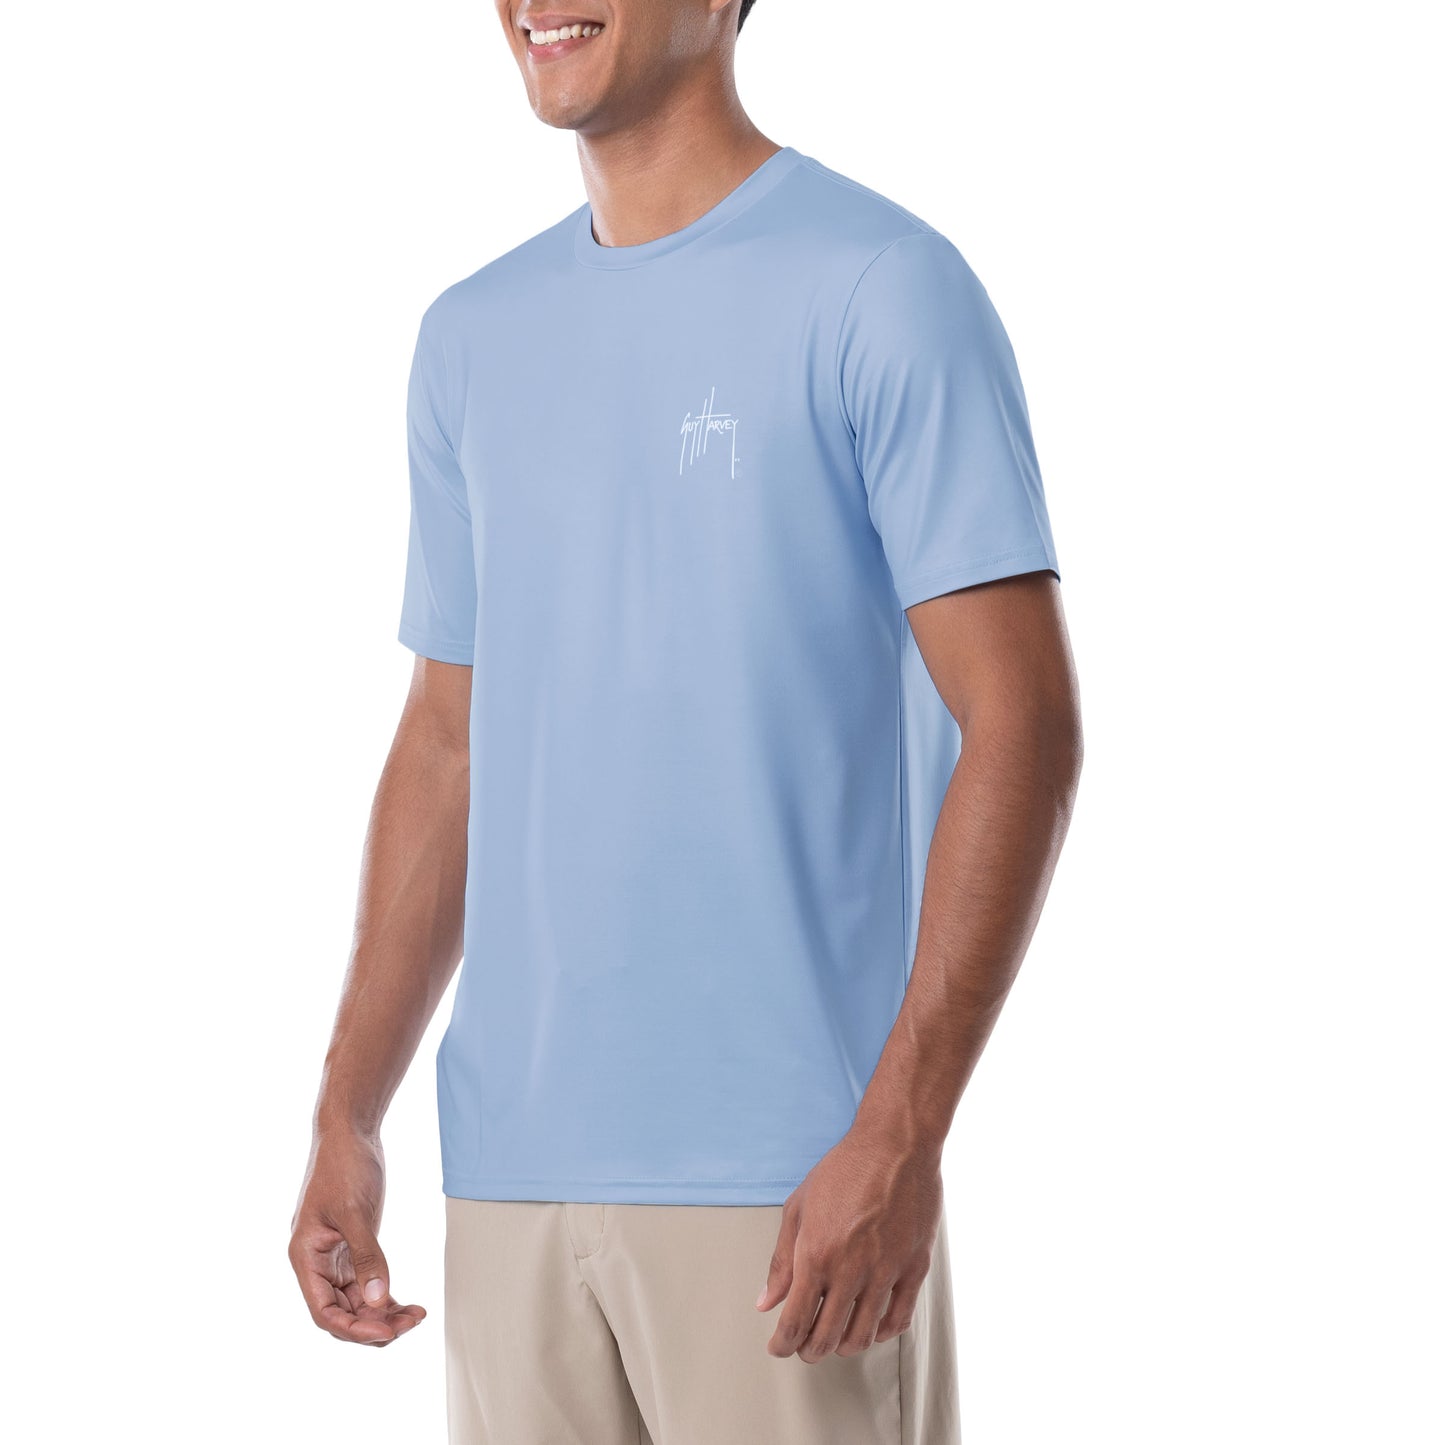 Men's Sailfish Americana Short Sleeve Performance Shirt